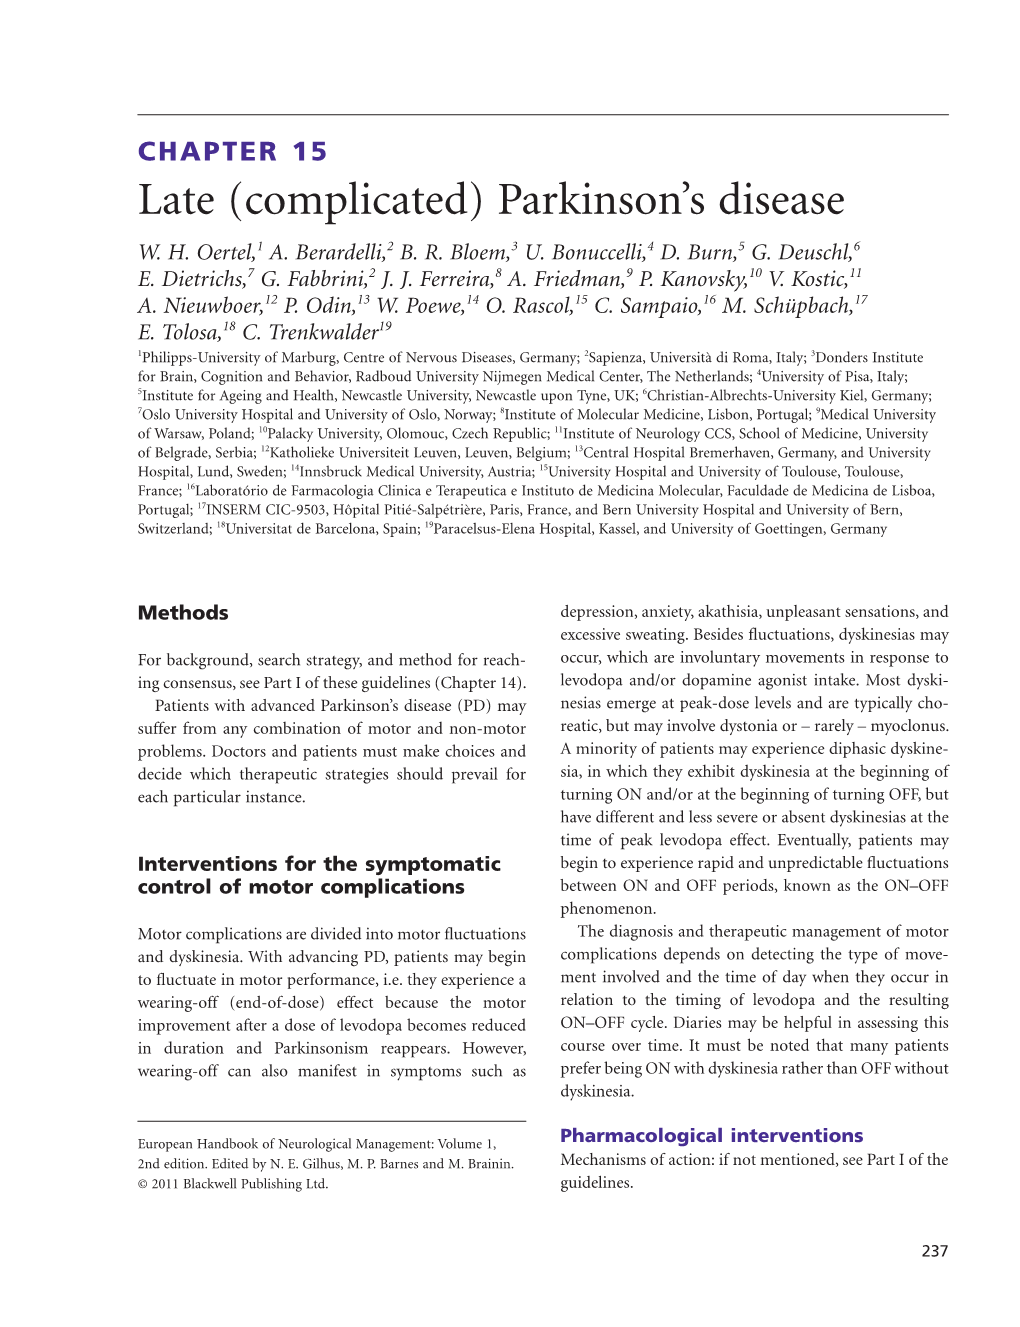 European Parkinson's Disease Recommendations